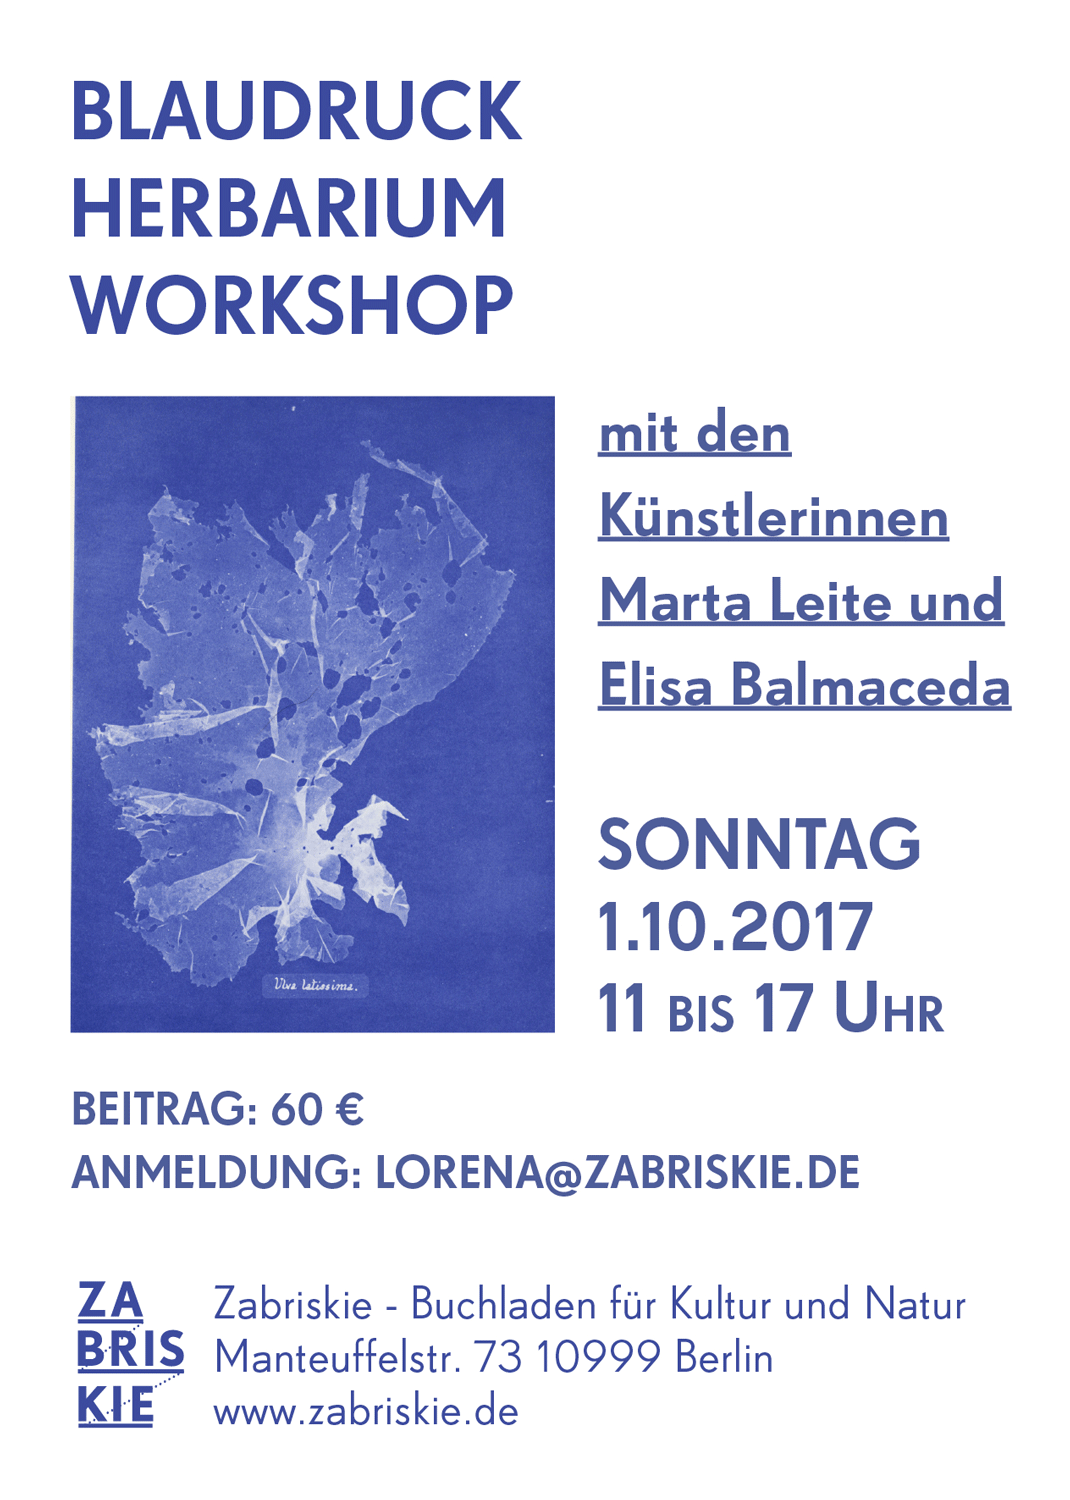 Blaudruck Herbarium Workshop | Cyanotype Herbarium Workshop